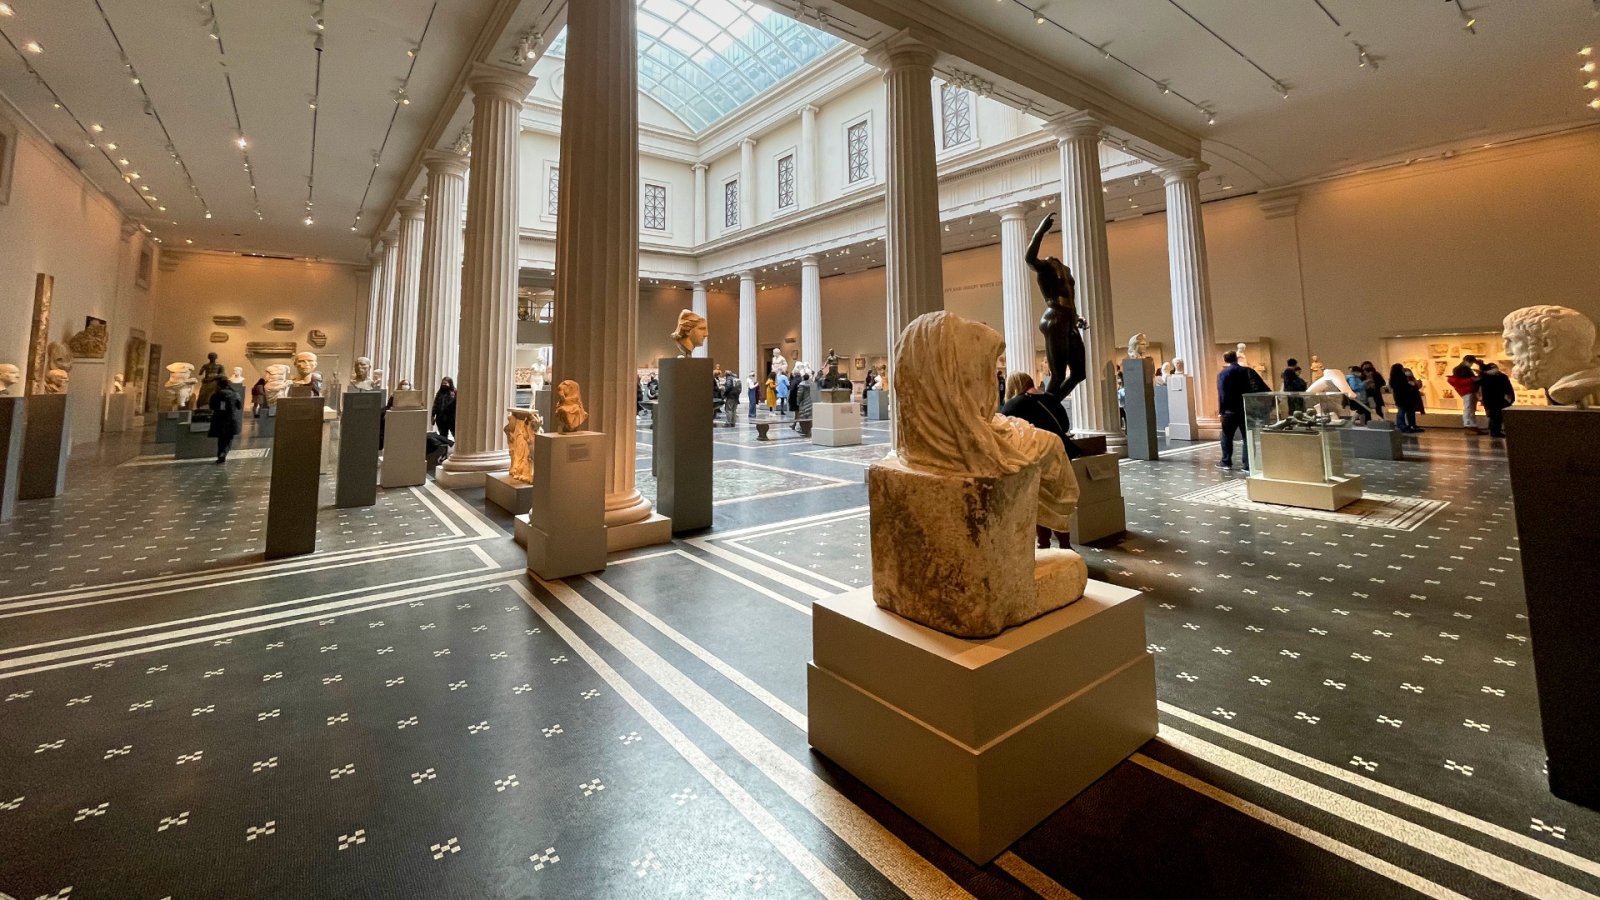 Met의 방문객 170만 명 감소 - 최근 가장 많이 감소한 미국 미술관